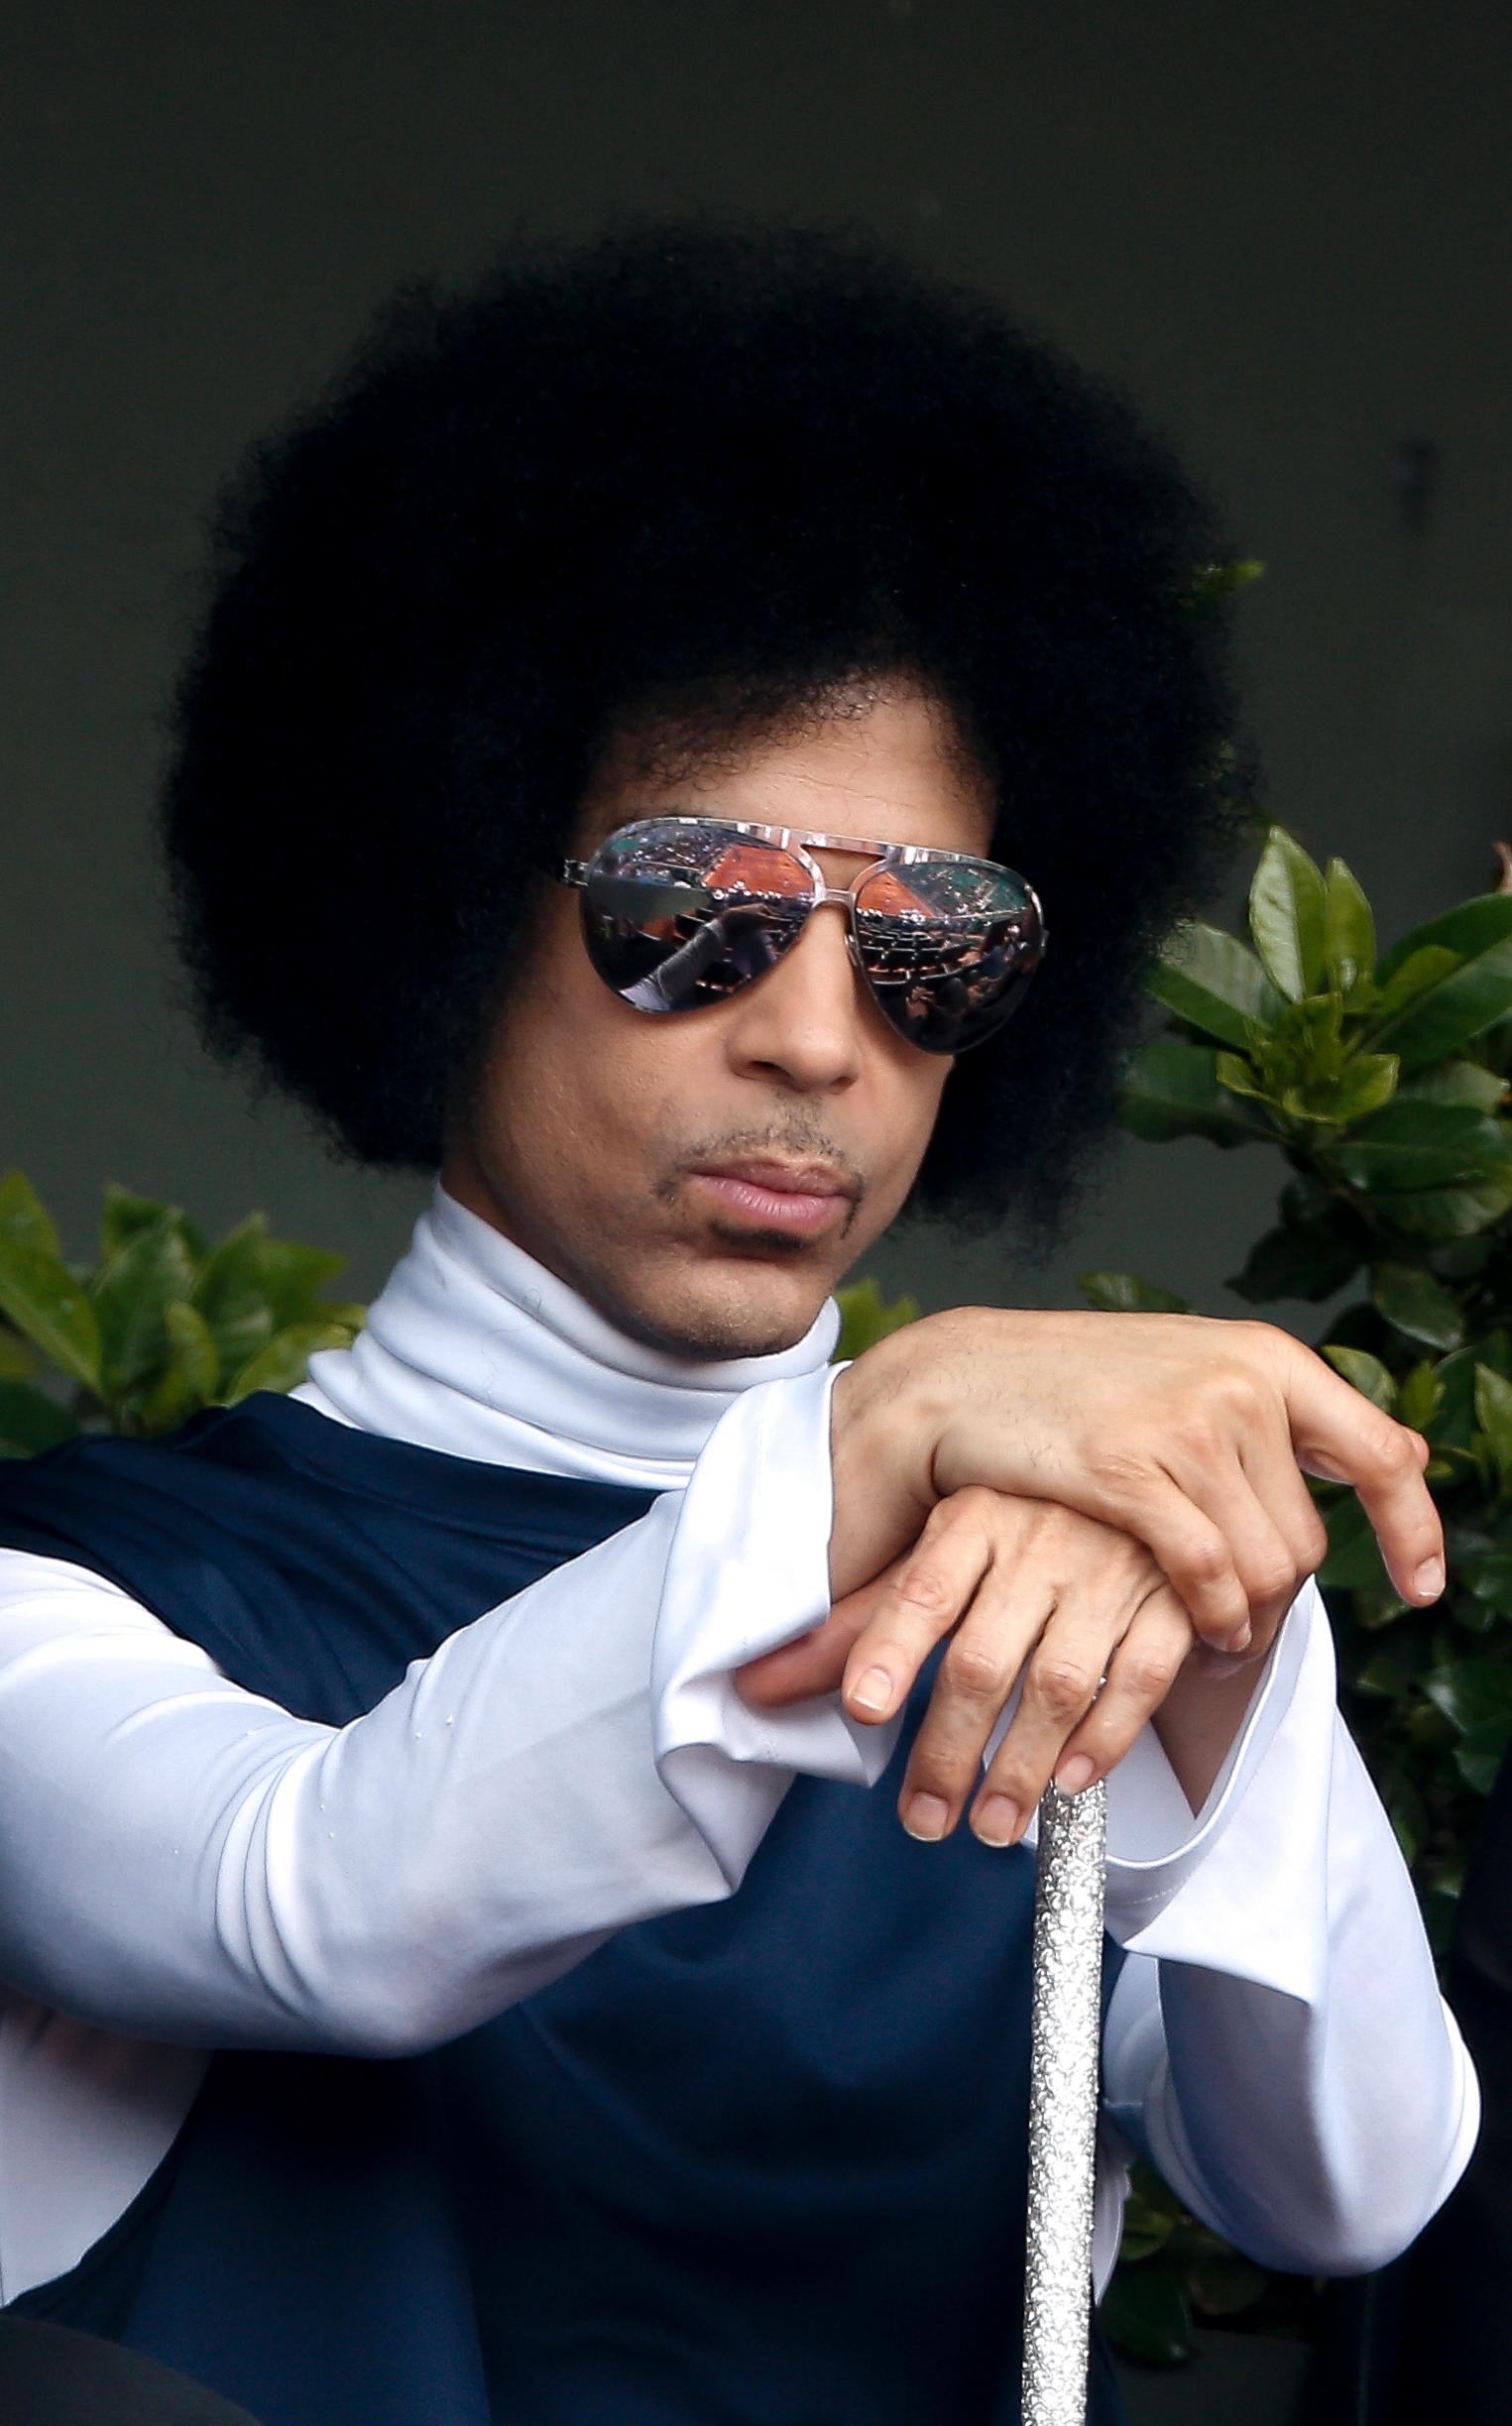 Prince kollar tennis på roland garros i Paris 2014